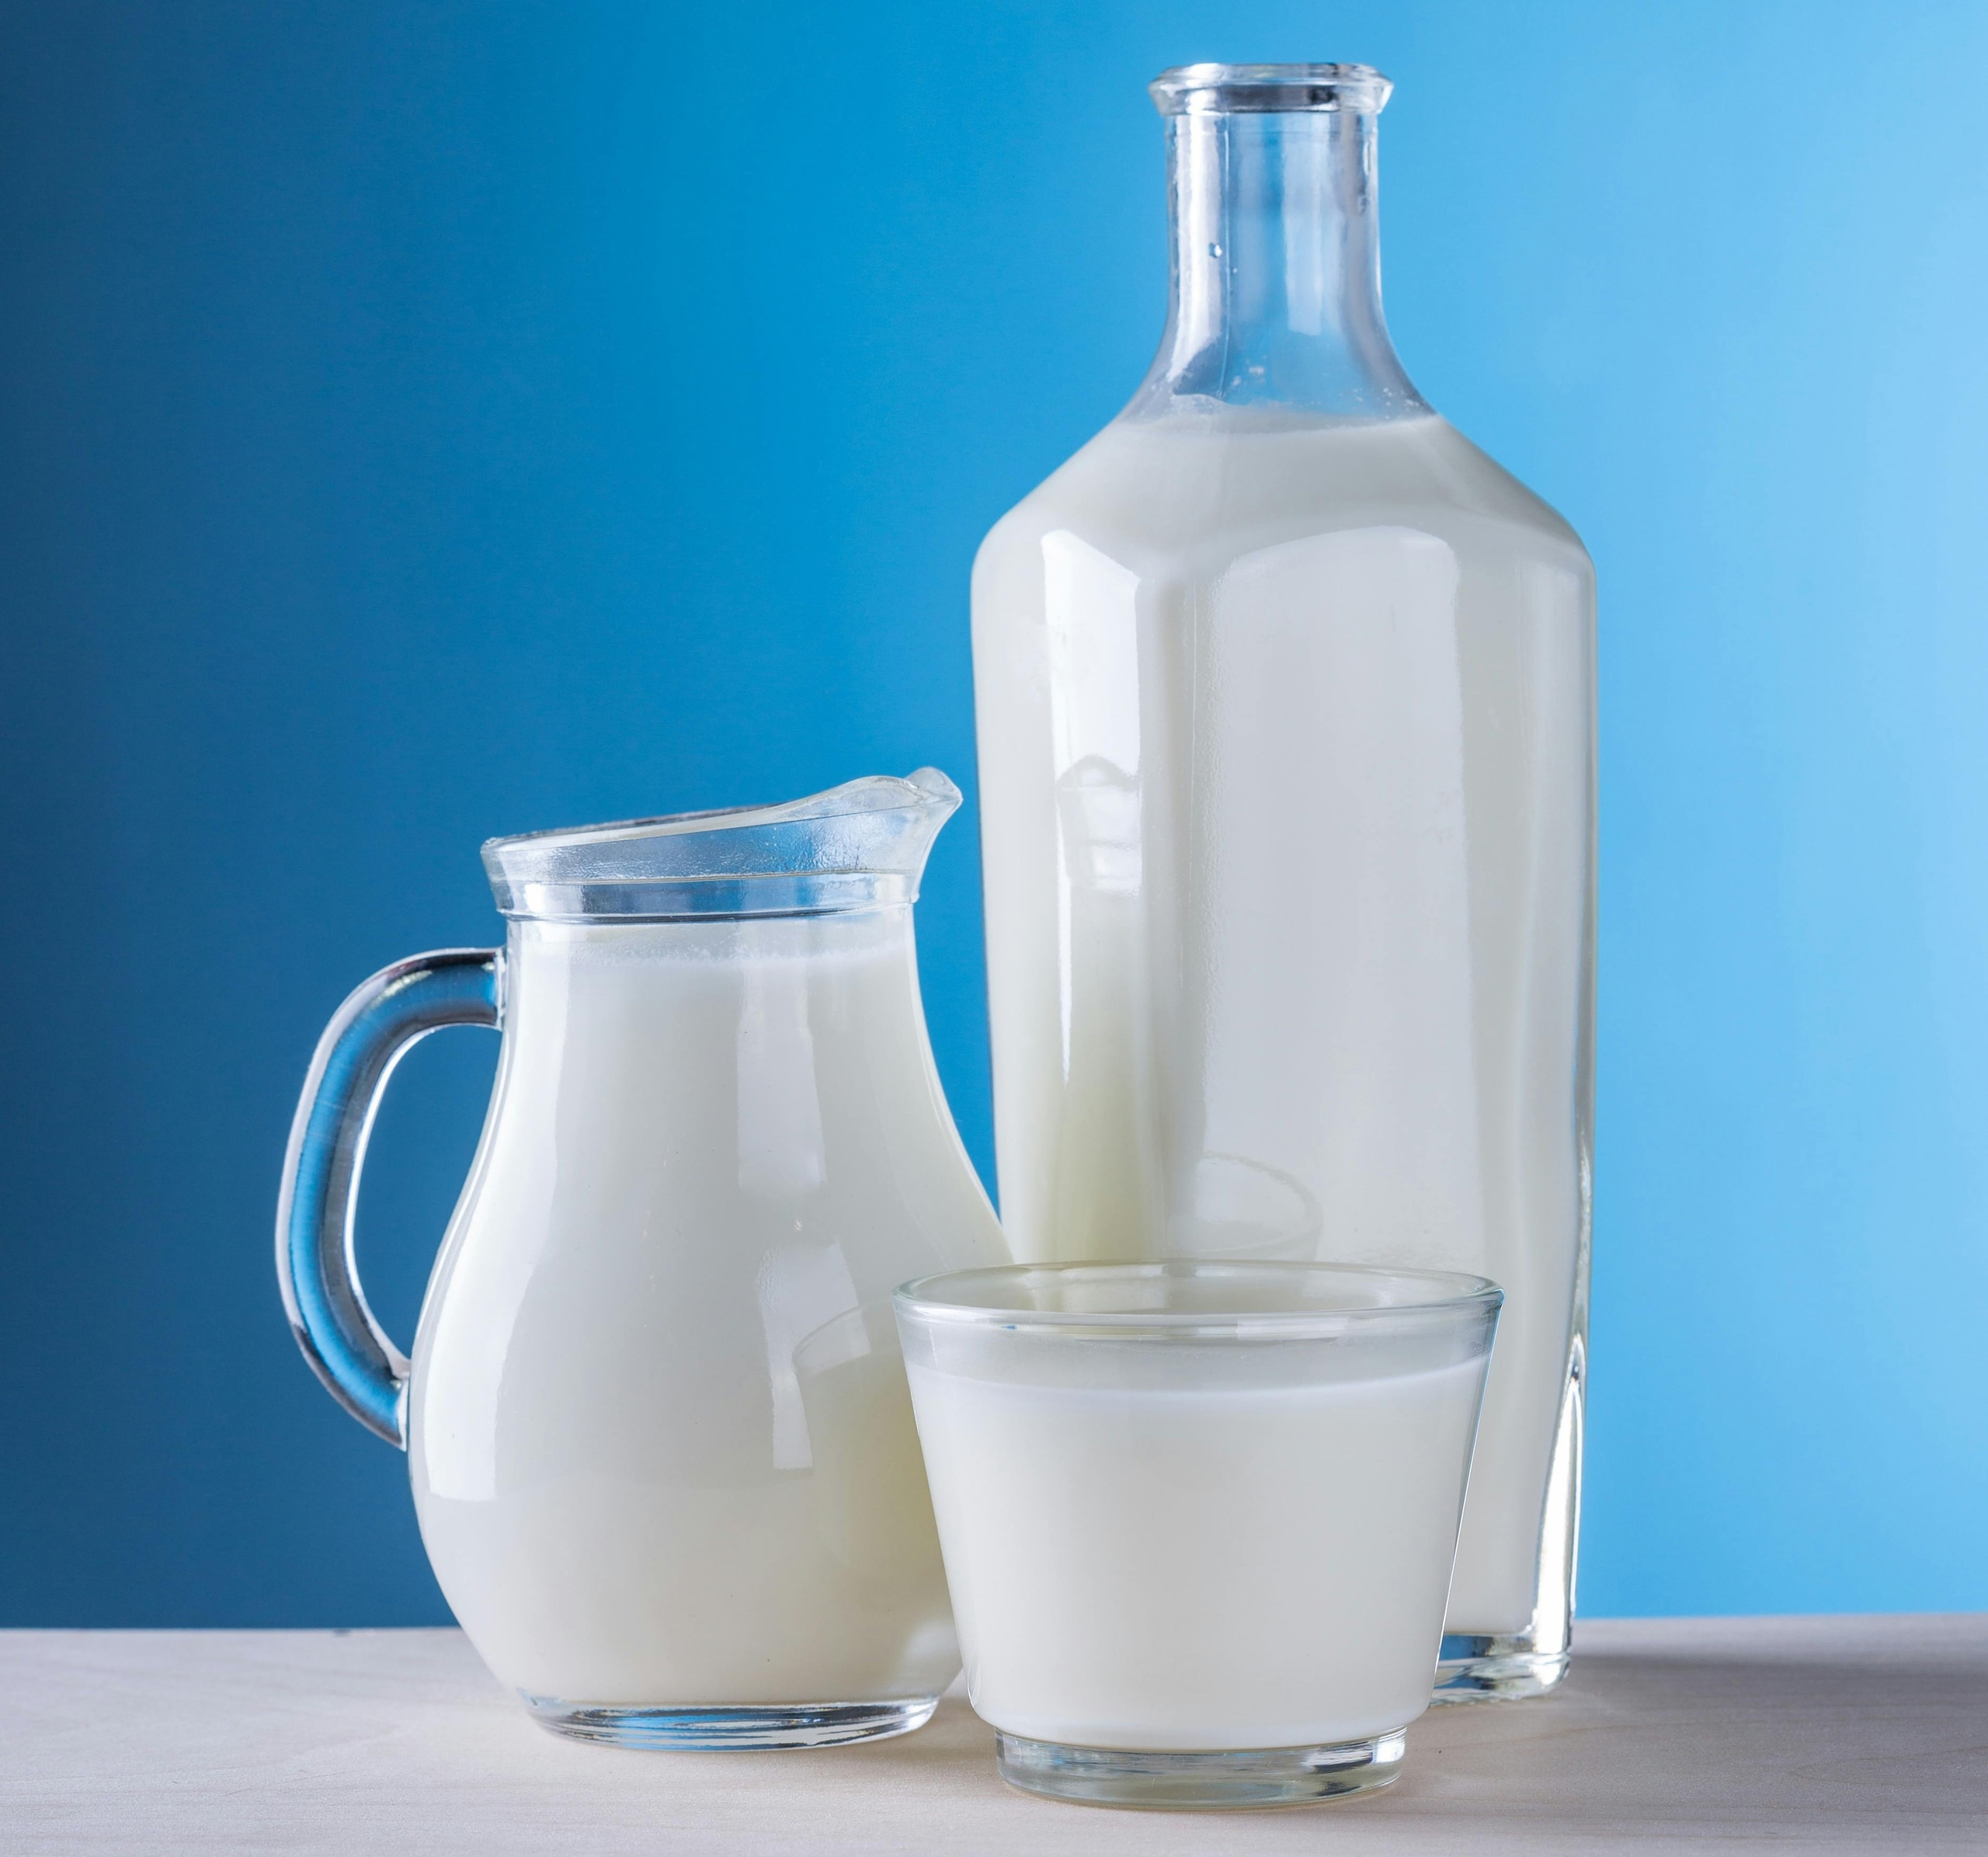 소화불량 환자는 우유, 유제품 섭취를 피해야 합니다.